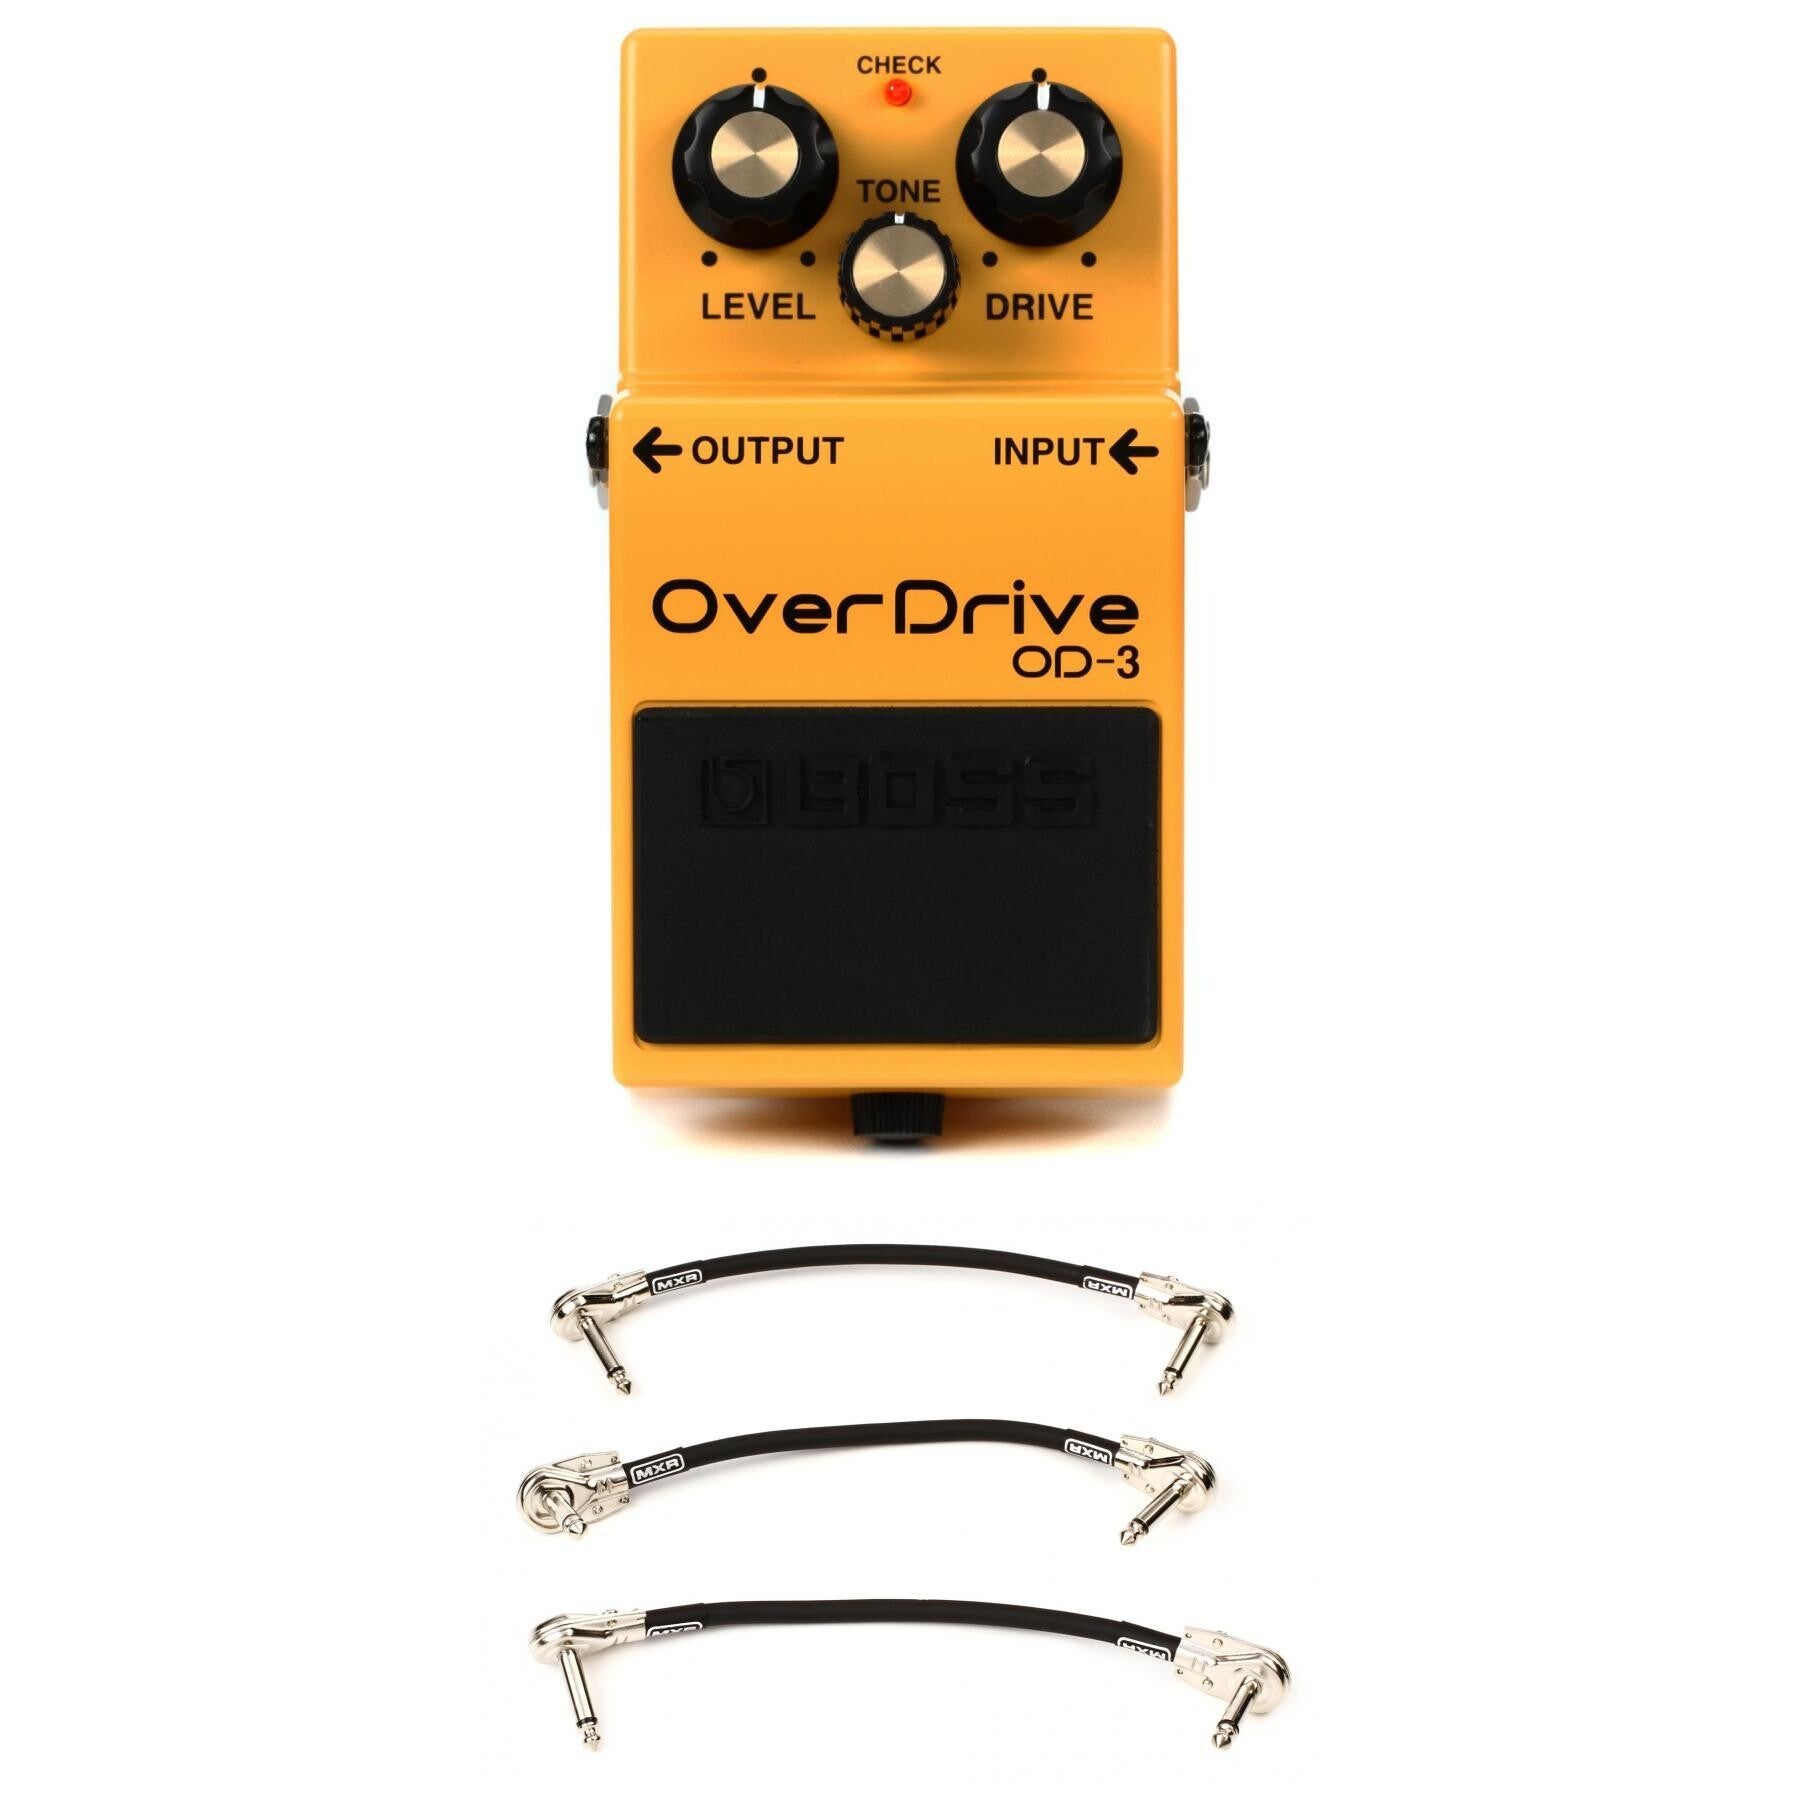 BOSS OD-3 Over Drive オーバードライブ - ギター